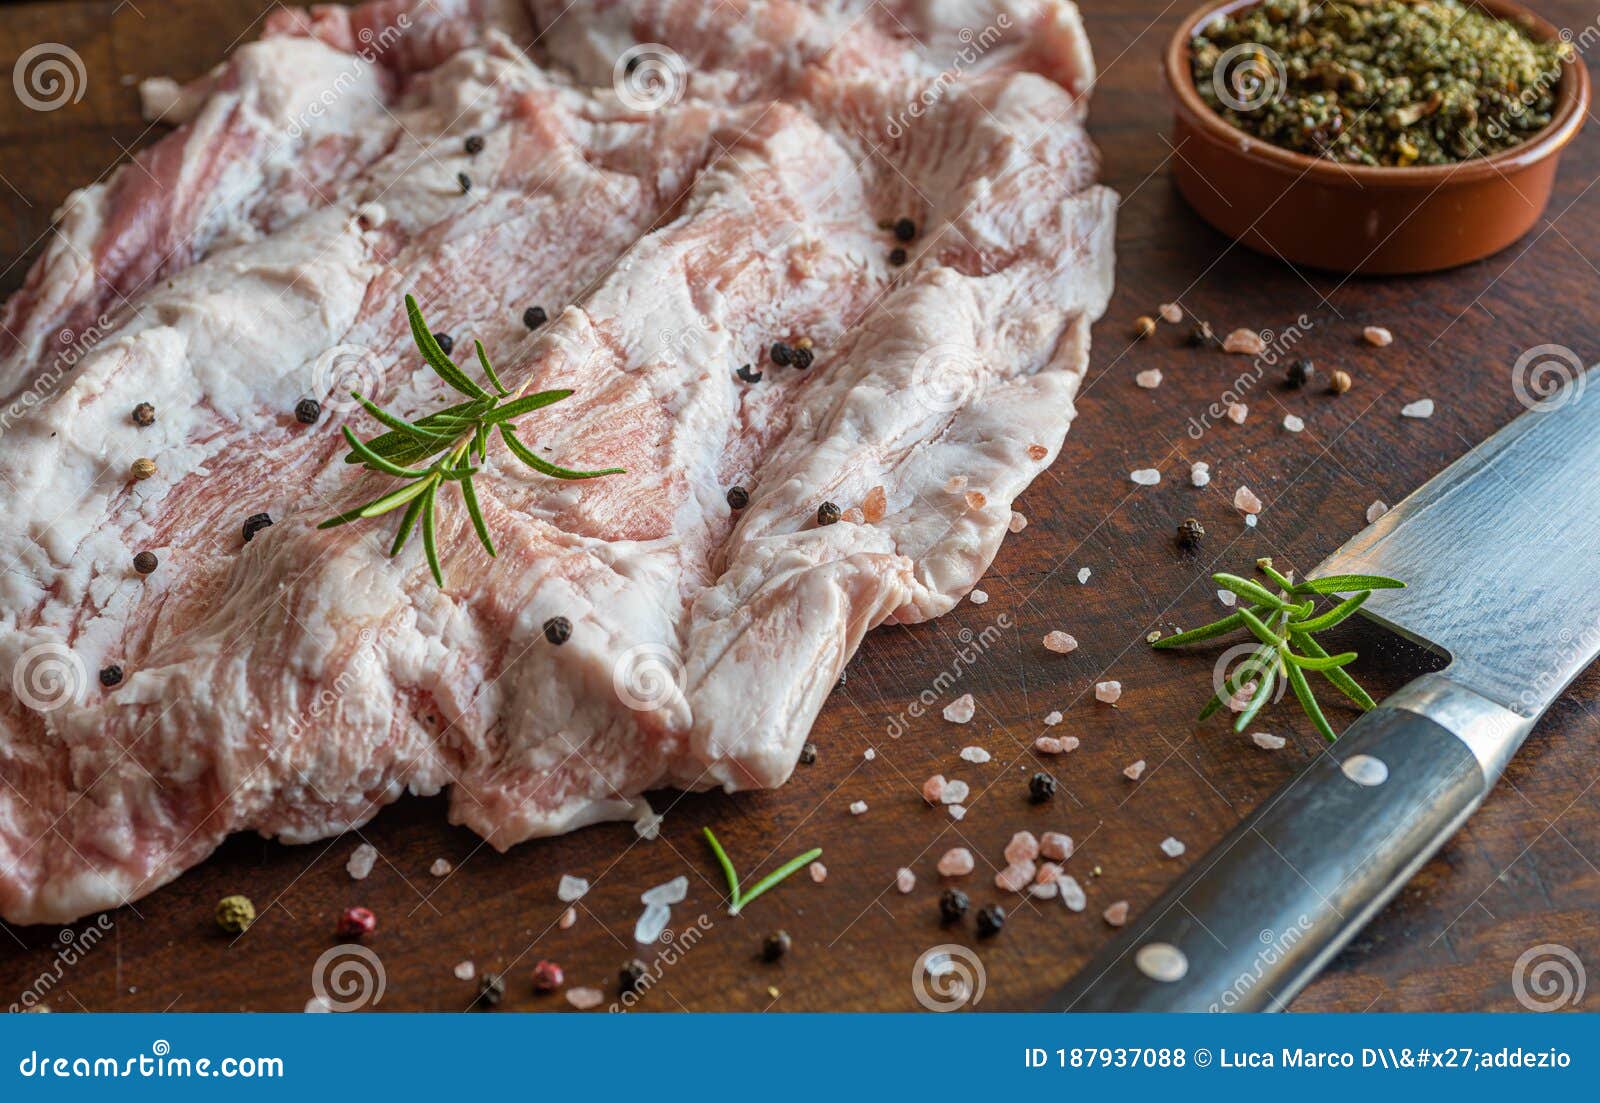 close up of raw pork secreto de ventresca pure iberico